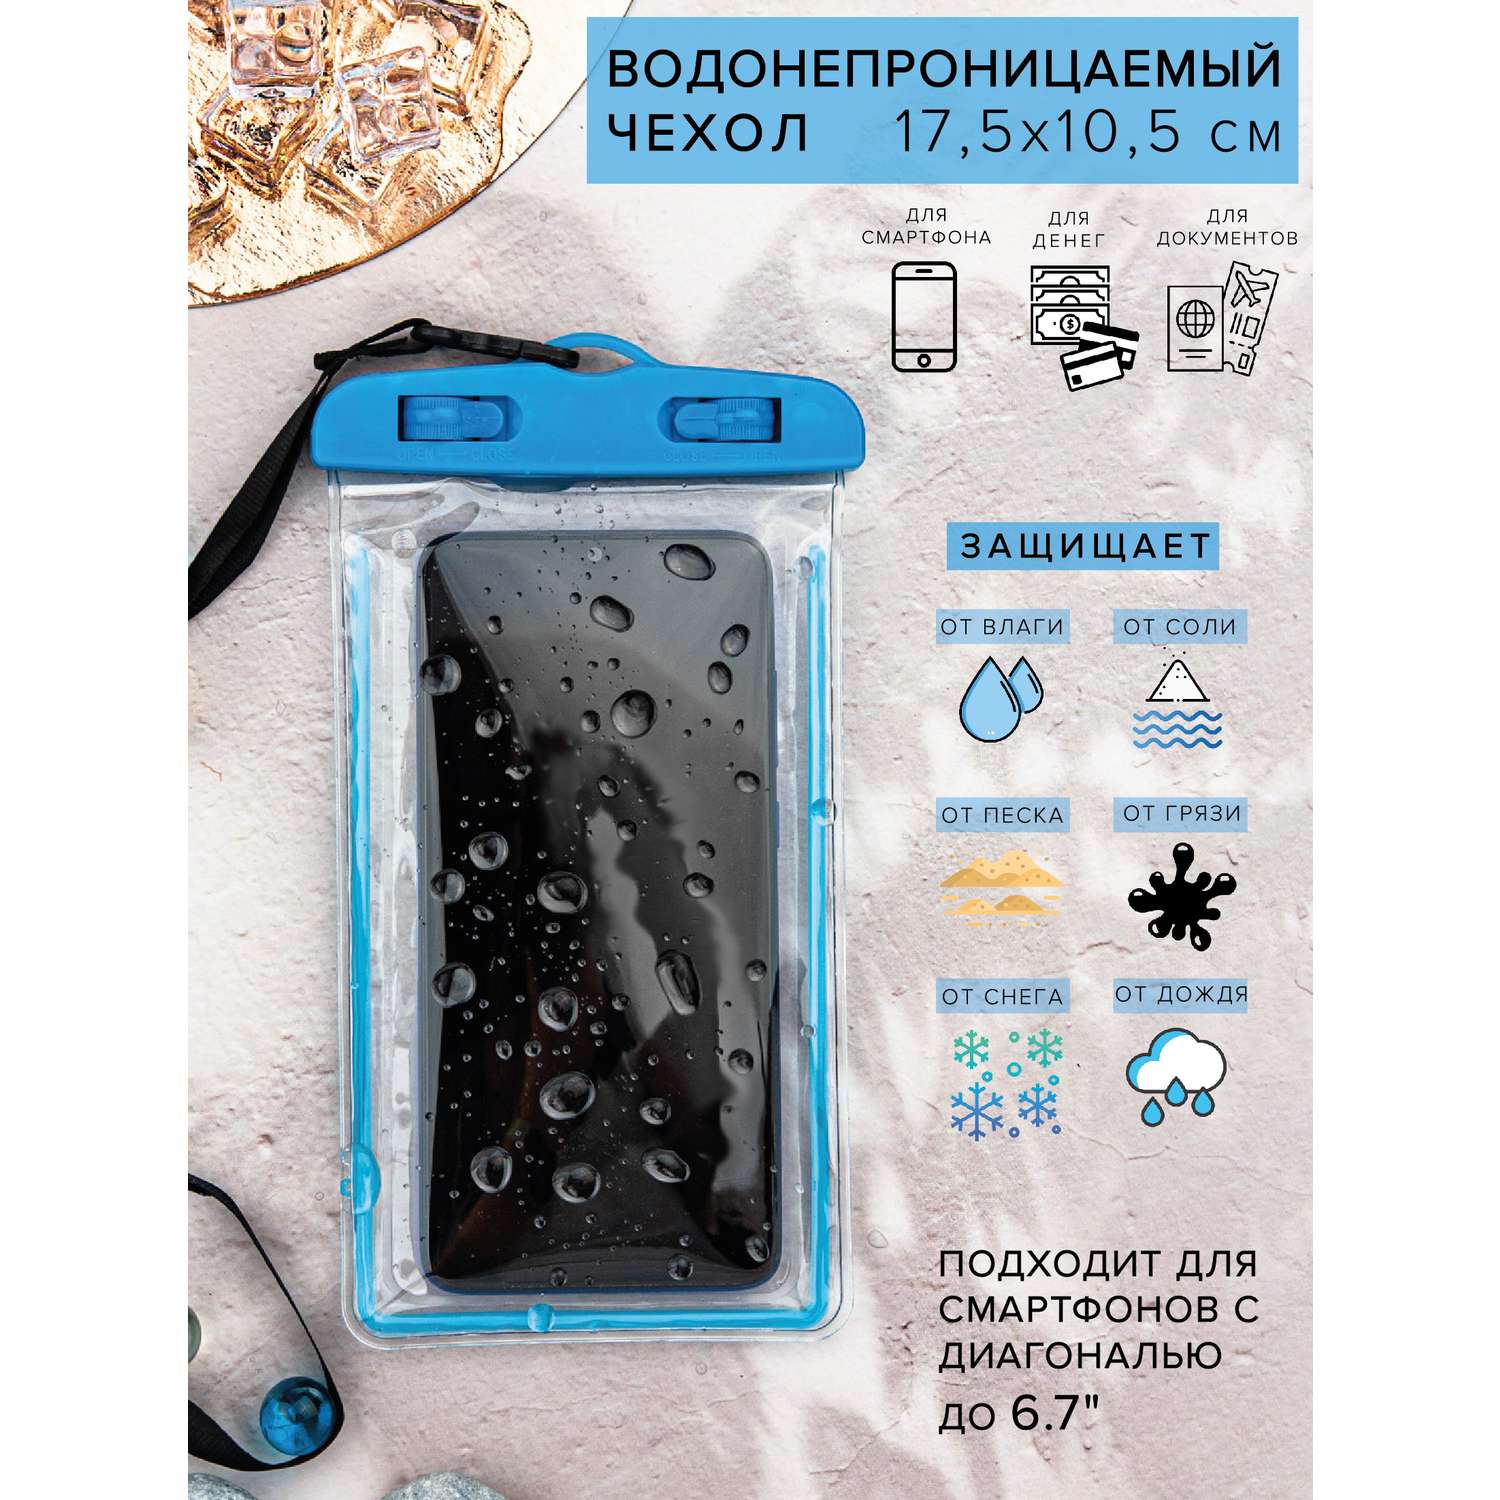 Чехол Good Sale Водонепроницаемый для телефона голубой 17.5х10.5 см - фото 3